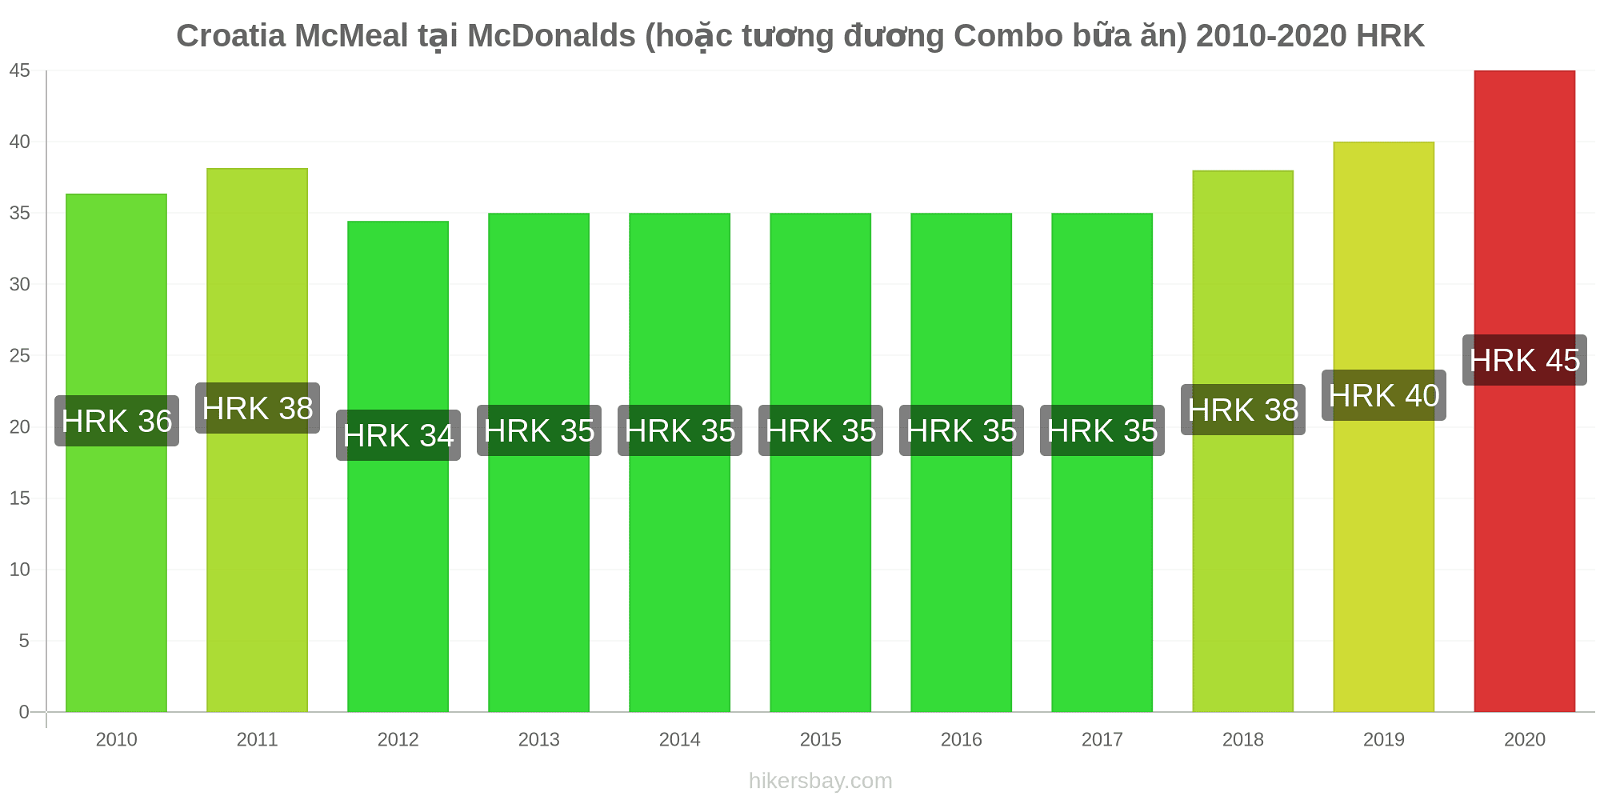 Croatia thay đổi giá McMeal tại McDonalds (hoặc tương đương Combo bữa ăn) hikersbay.com